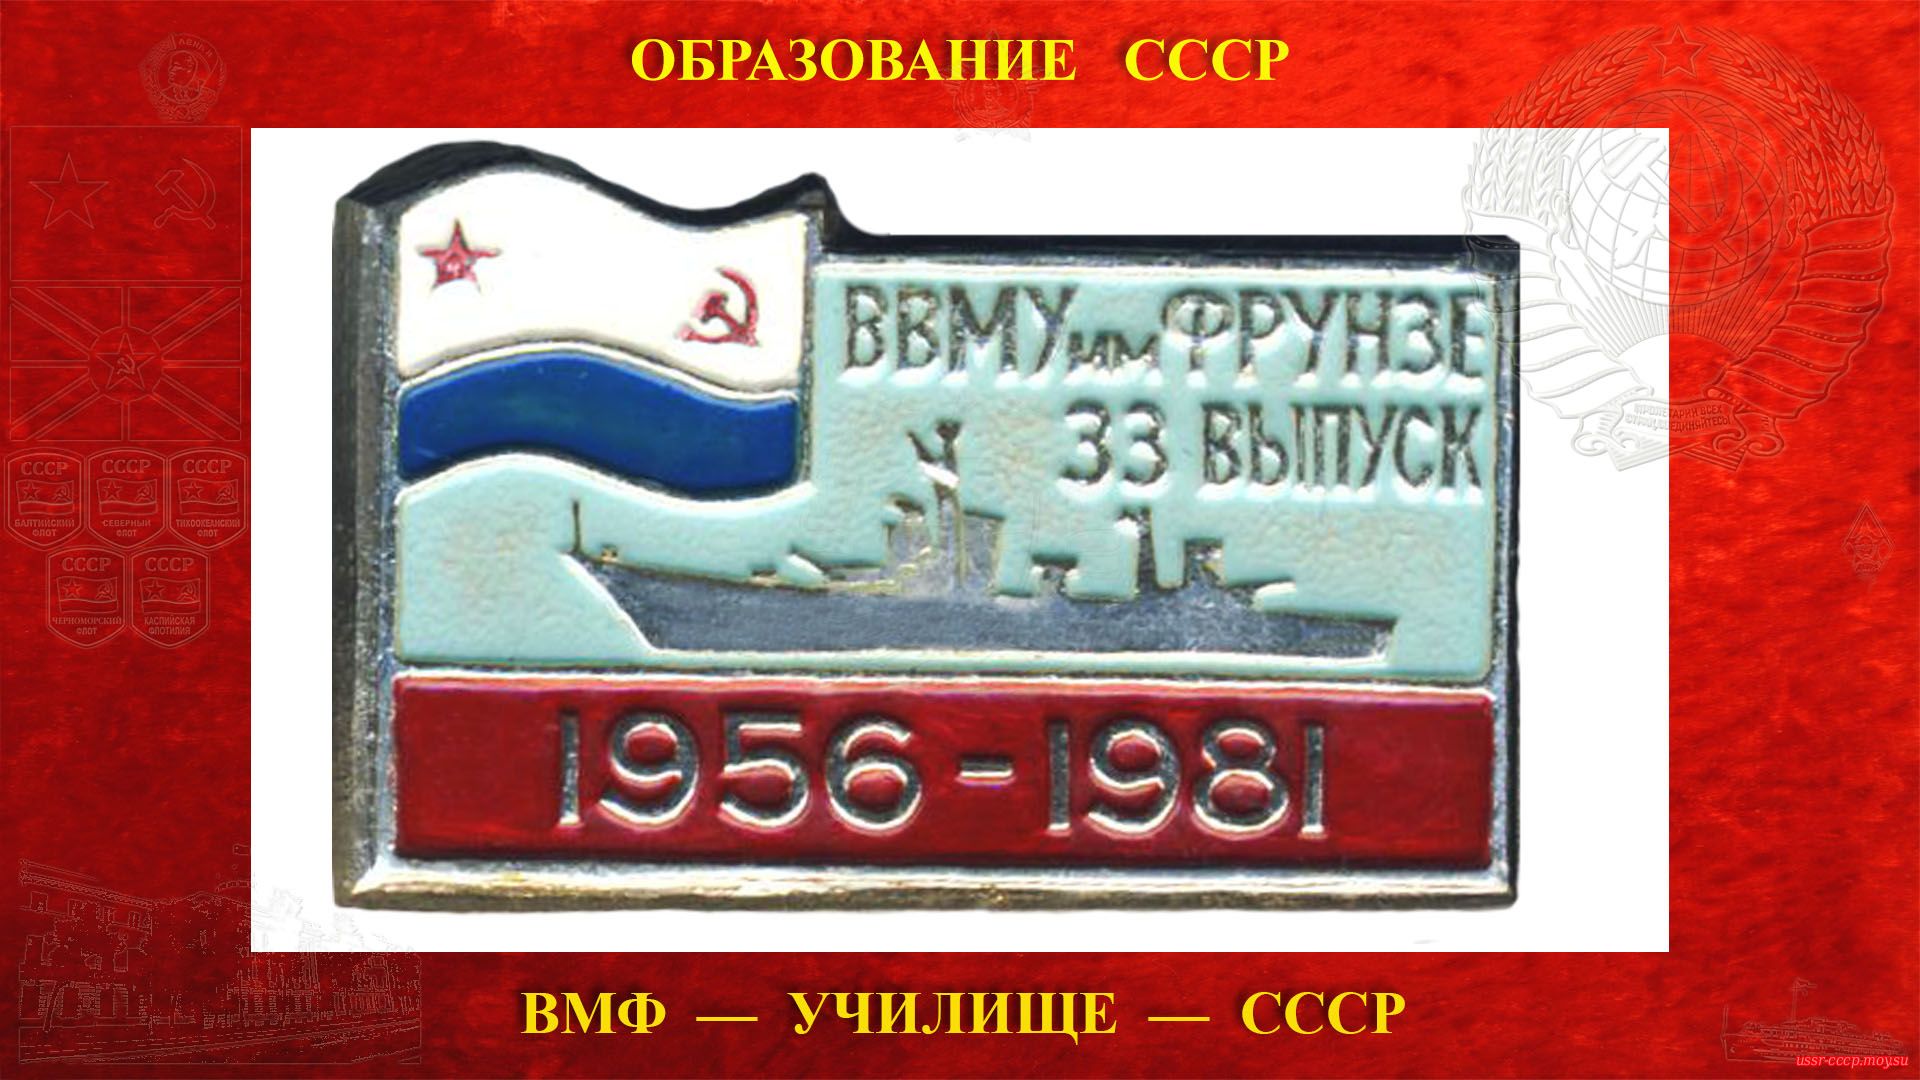 Значок 33 выпуск 1956-1981 ВВМУ имени М. В. Фрунзе.